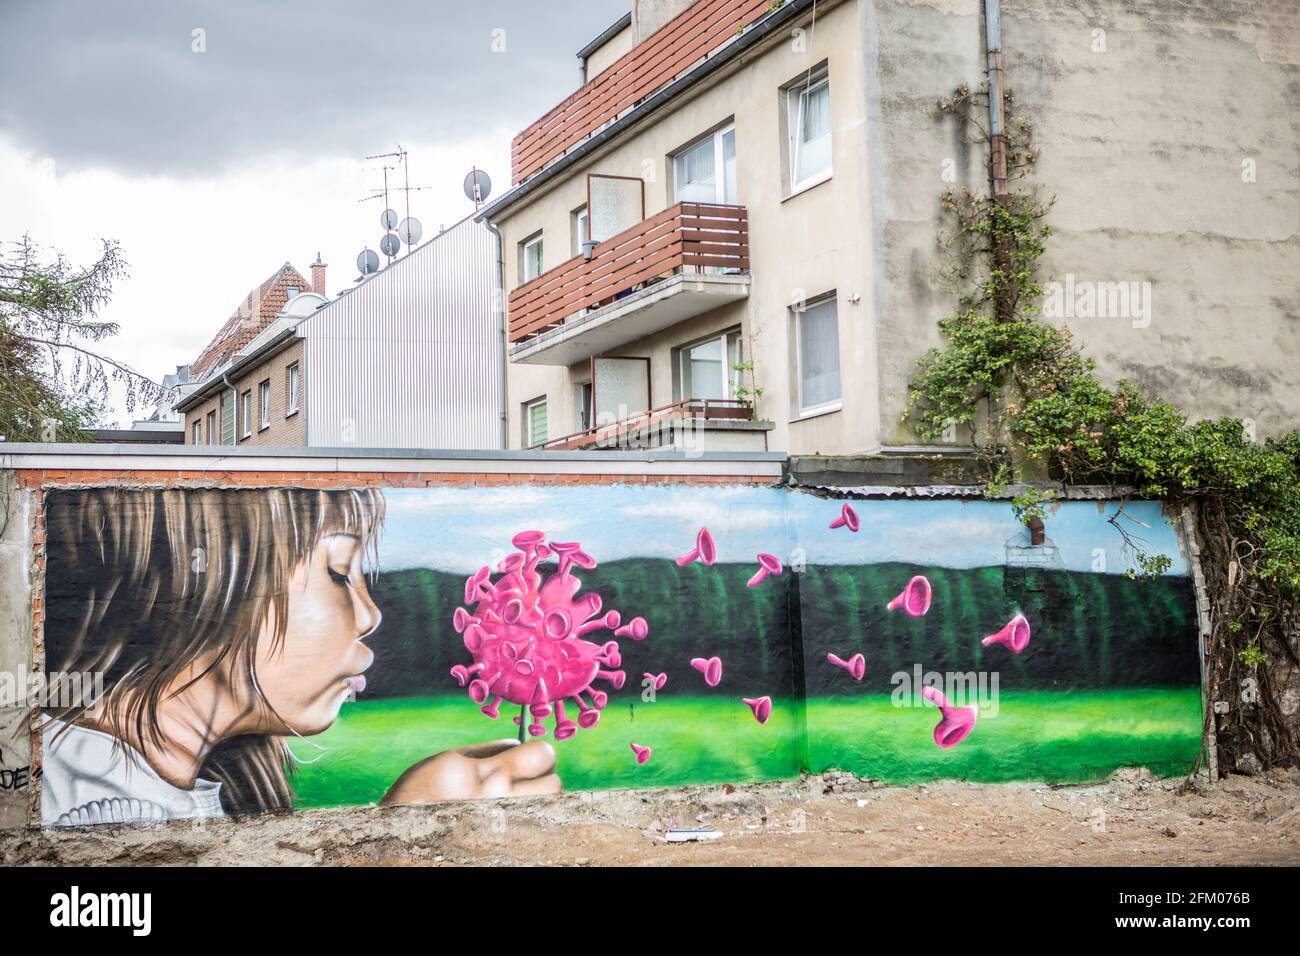 Ein Graffiti an einer alten Mauer zeigt ein Mädchen, welches wie bei einer Pusteblume ein Coronavirus anpustet, welches dann auseinander fliegt. Ein s Stockfoto